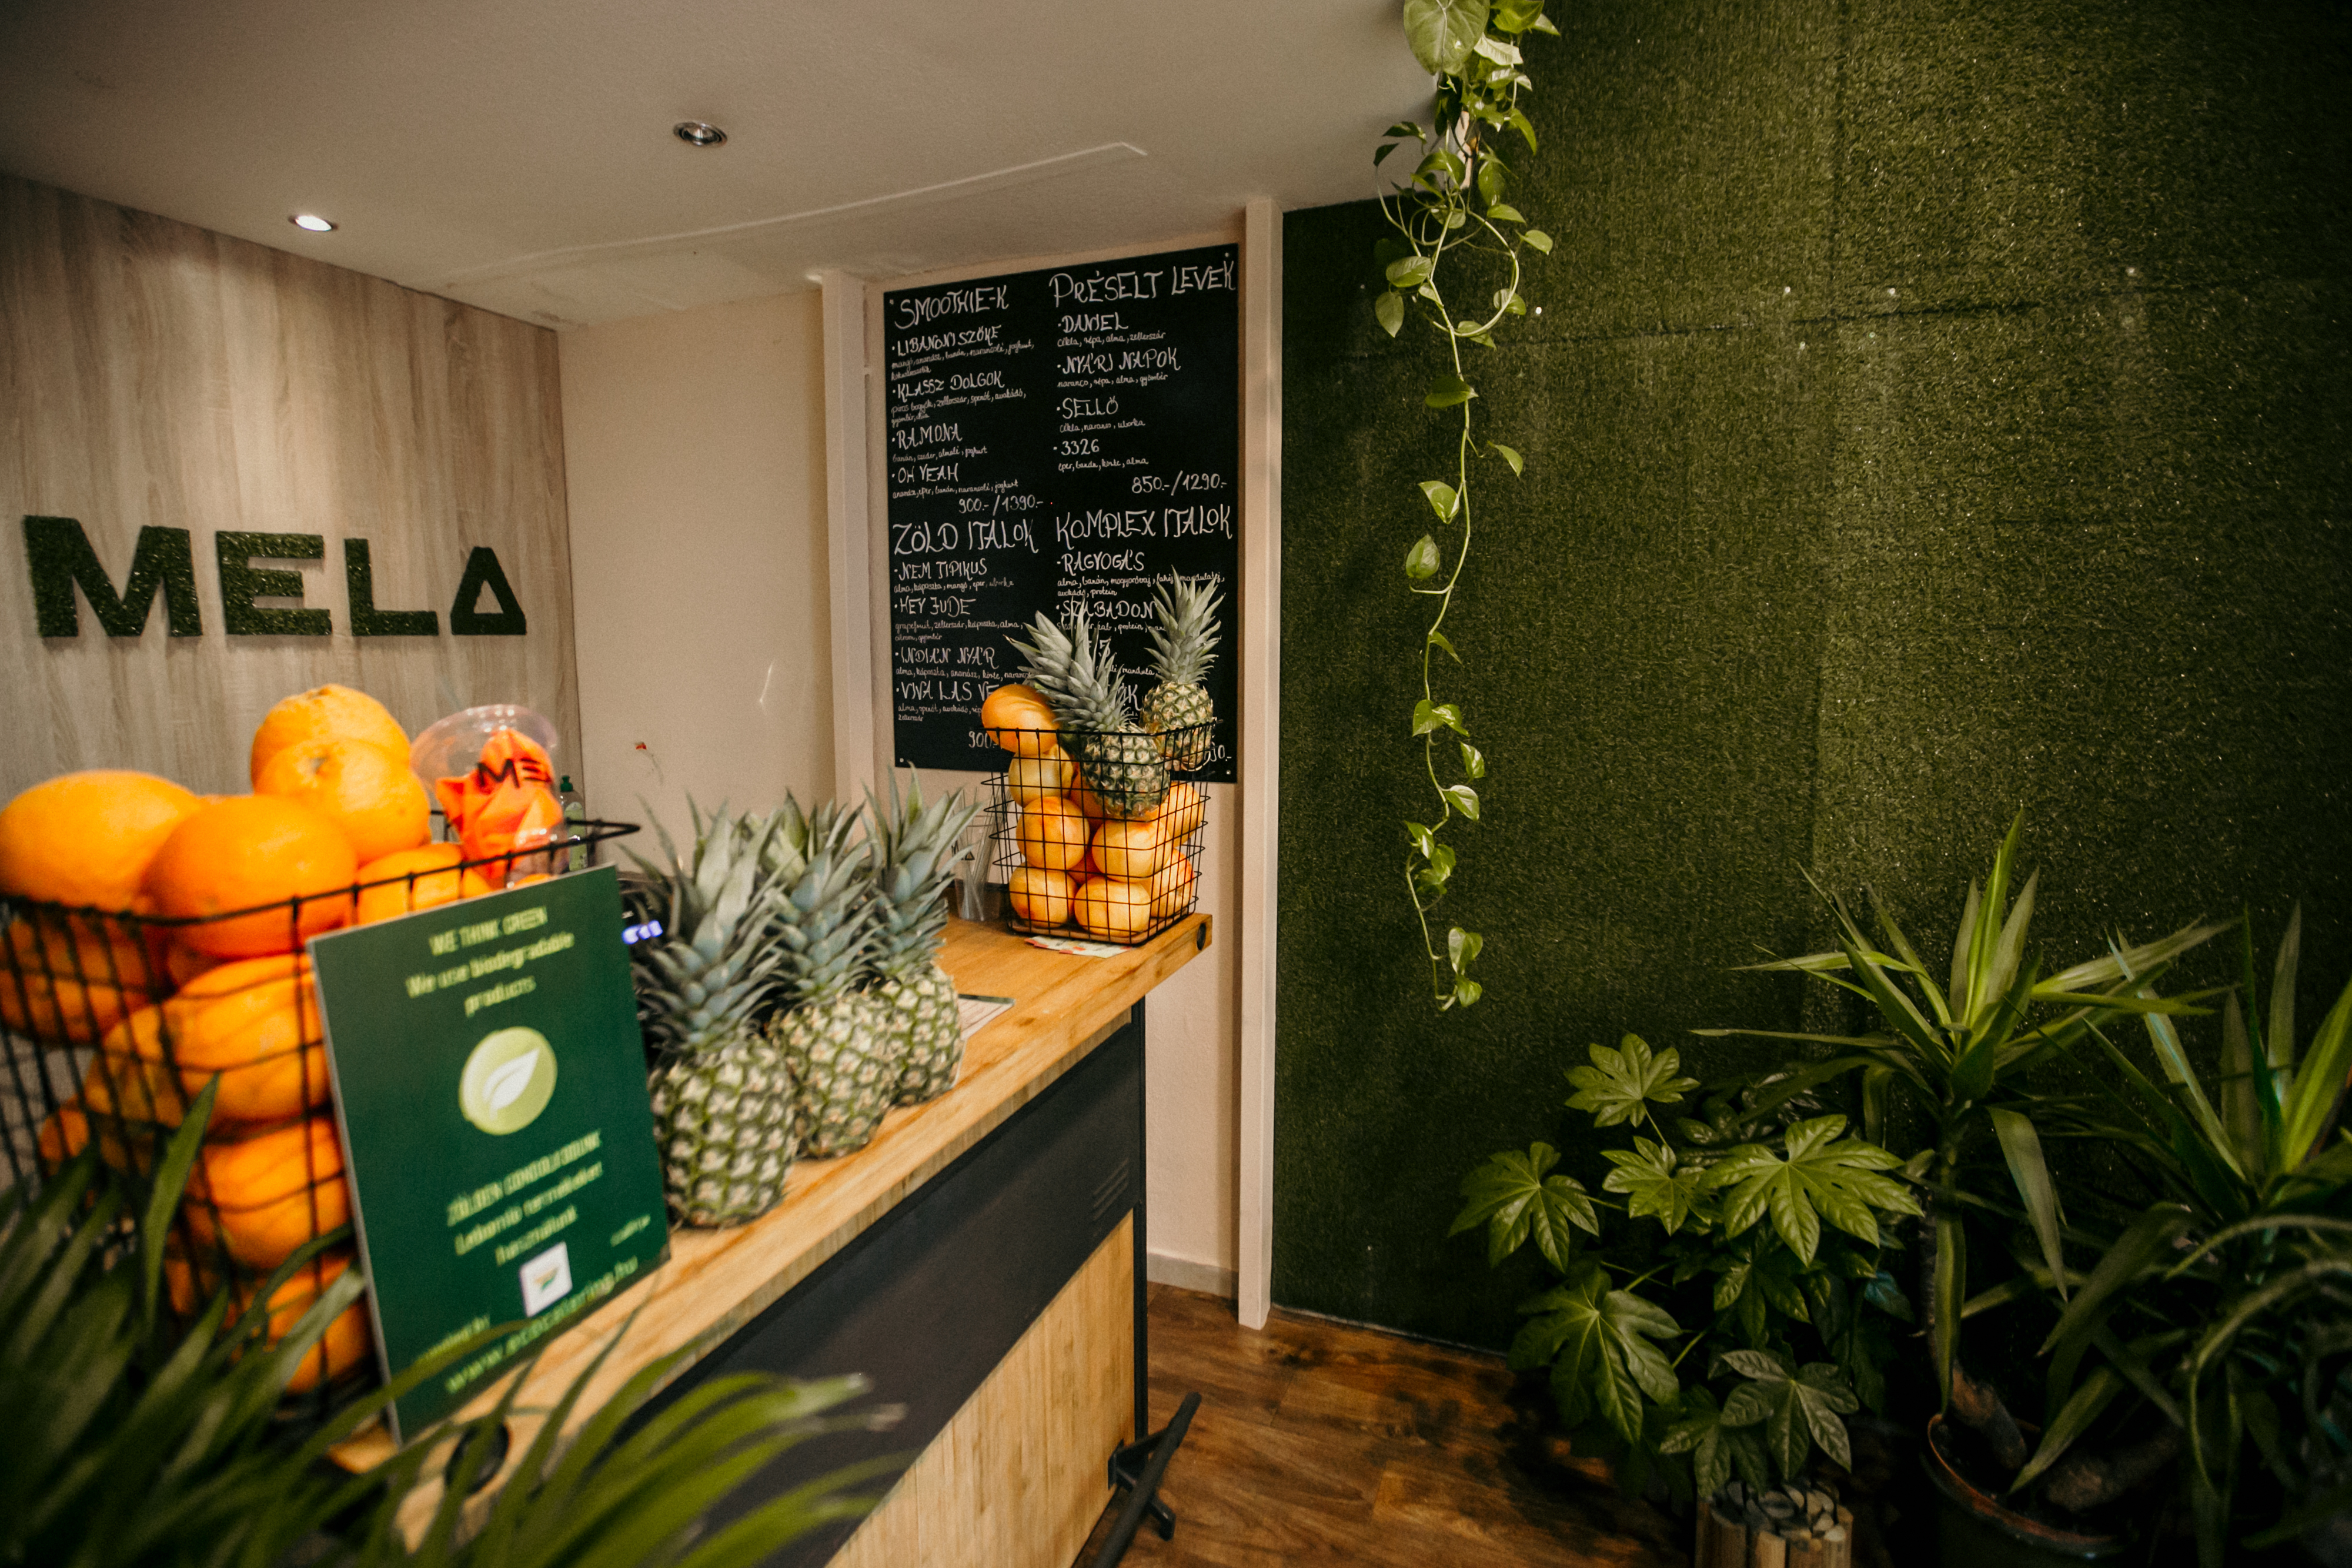 Életerő préselve és turmixolva – megnyílt a Mela Juice Bar a Pozsonyi úton